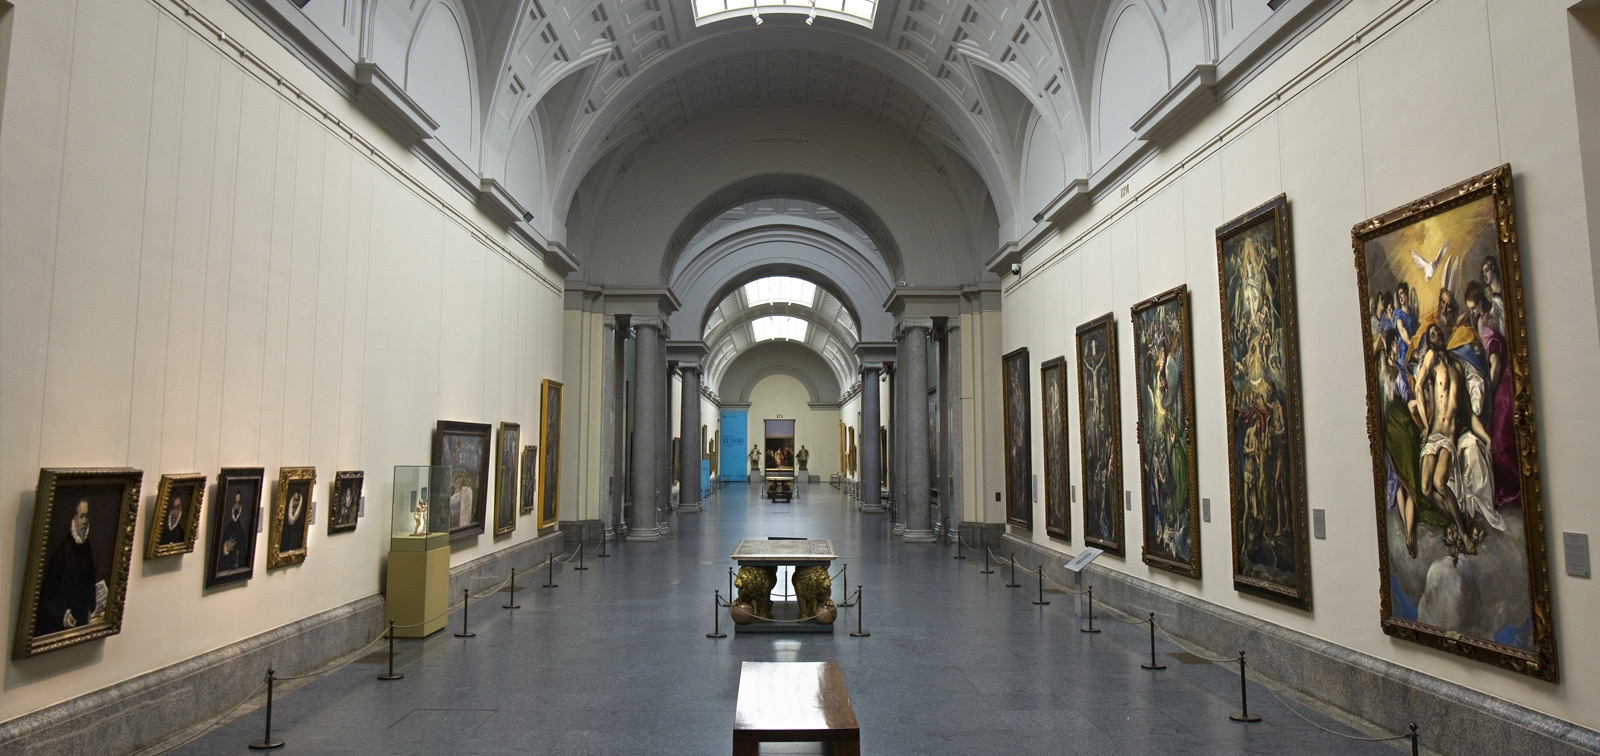 2020 Beca Internacional Fundación Iberdrola España - Museo Nacional del Prado de formación e investigación en Restauración de Pintura